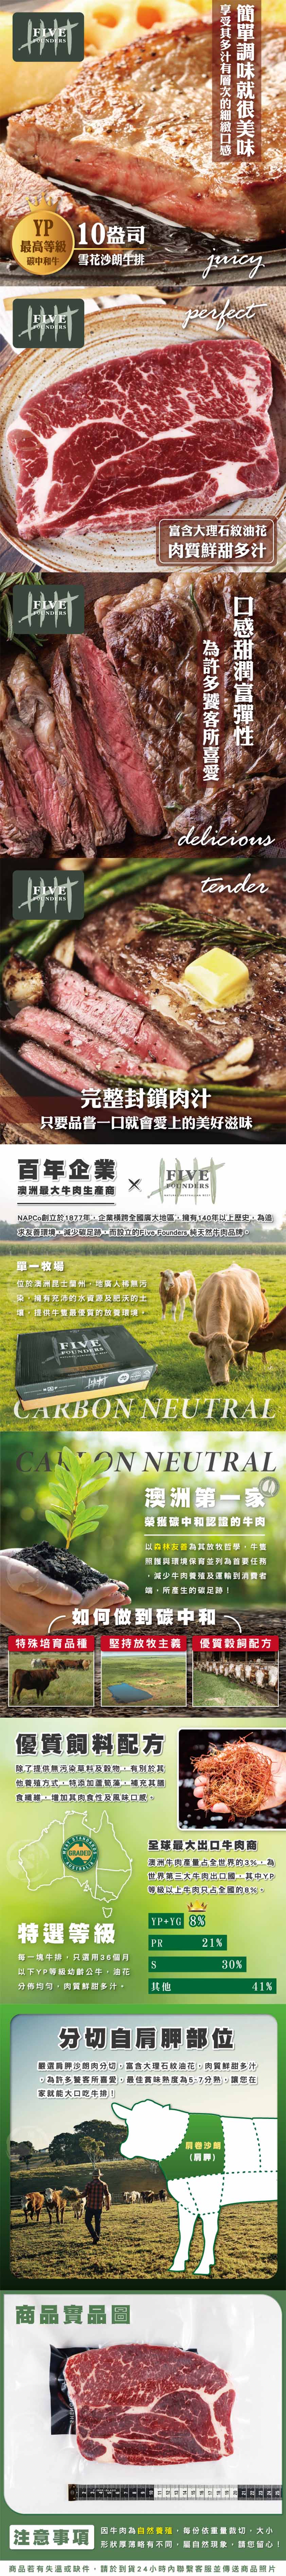 【欣明生鮮】澳洲YP頂級碳中和牛10盎司雪花沙朗牛排 300g/片